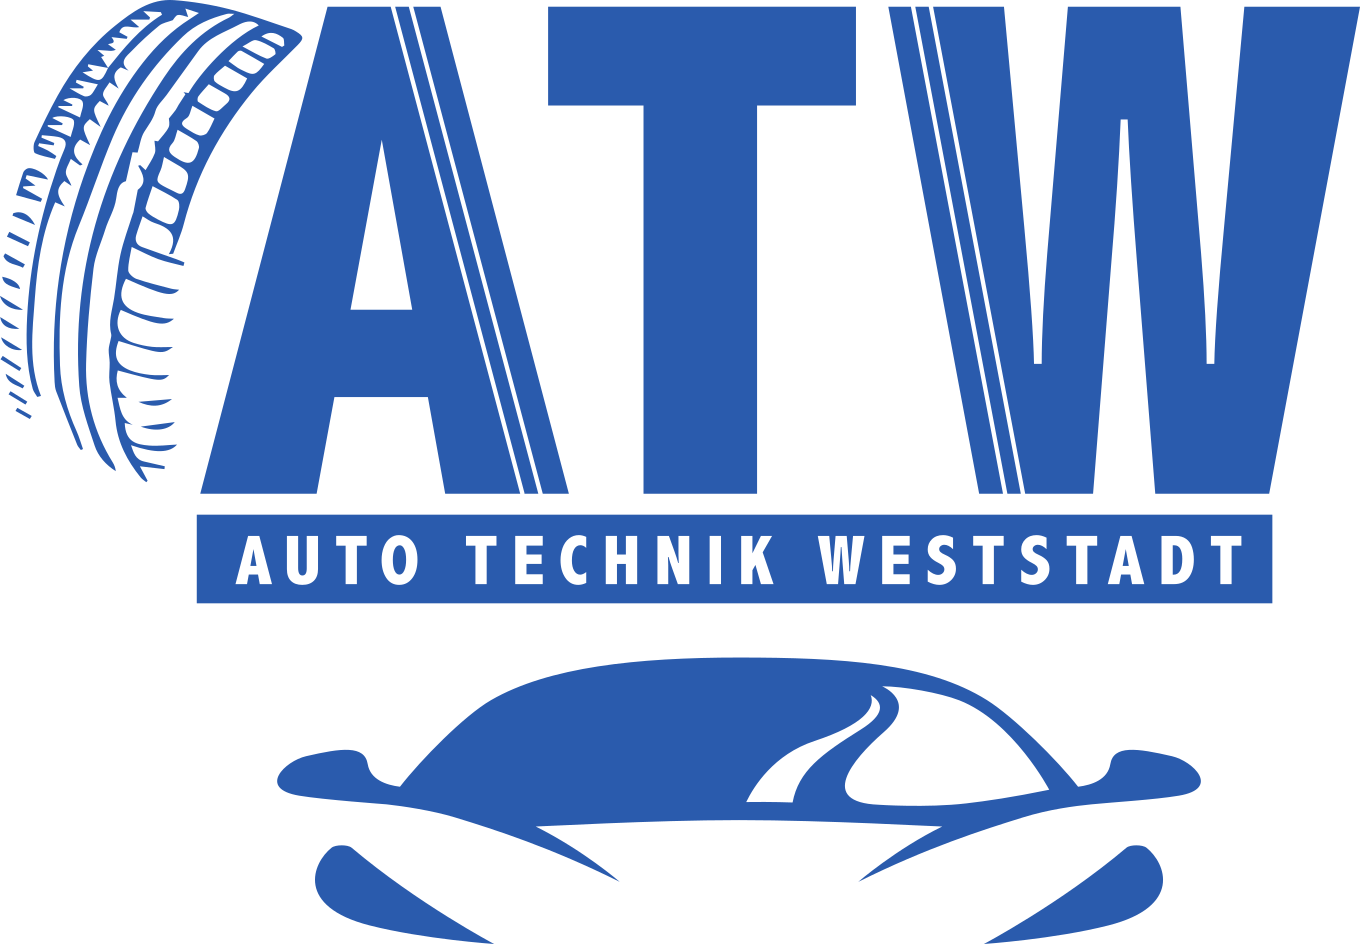 ATW Auto Technik Weststadt